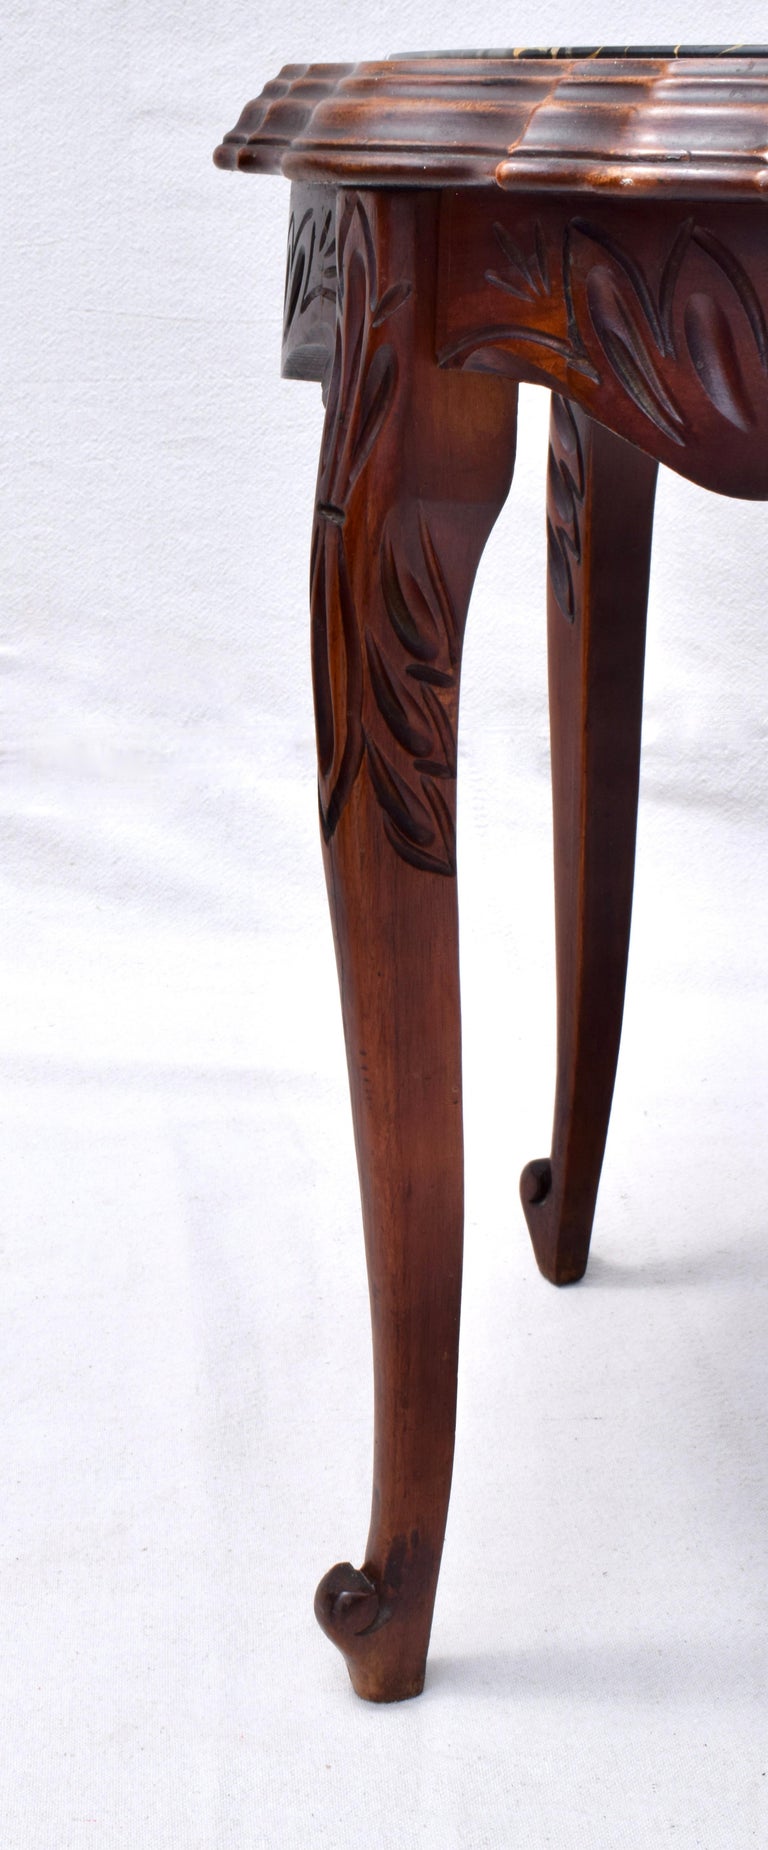 Gem Carved Wood Side Table